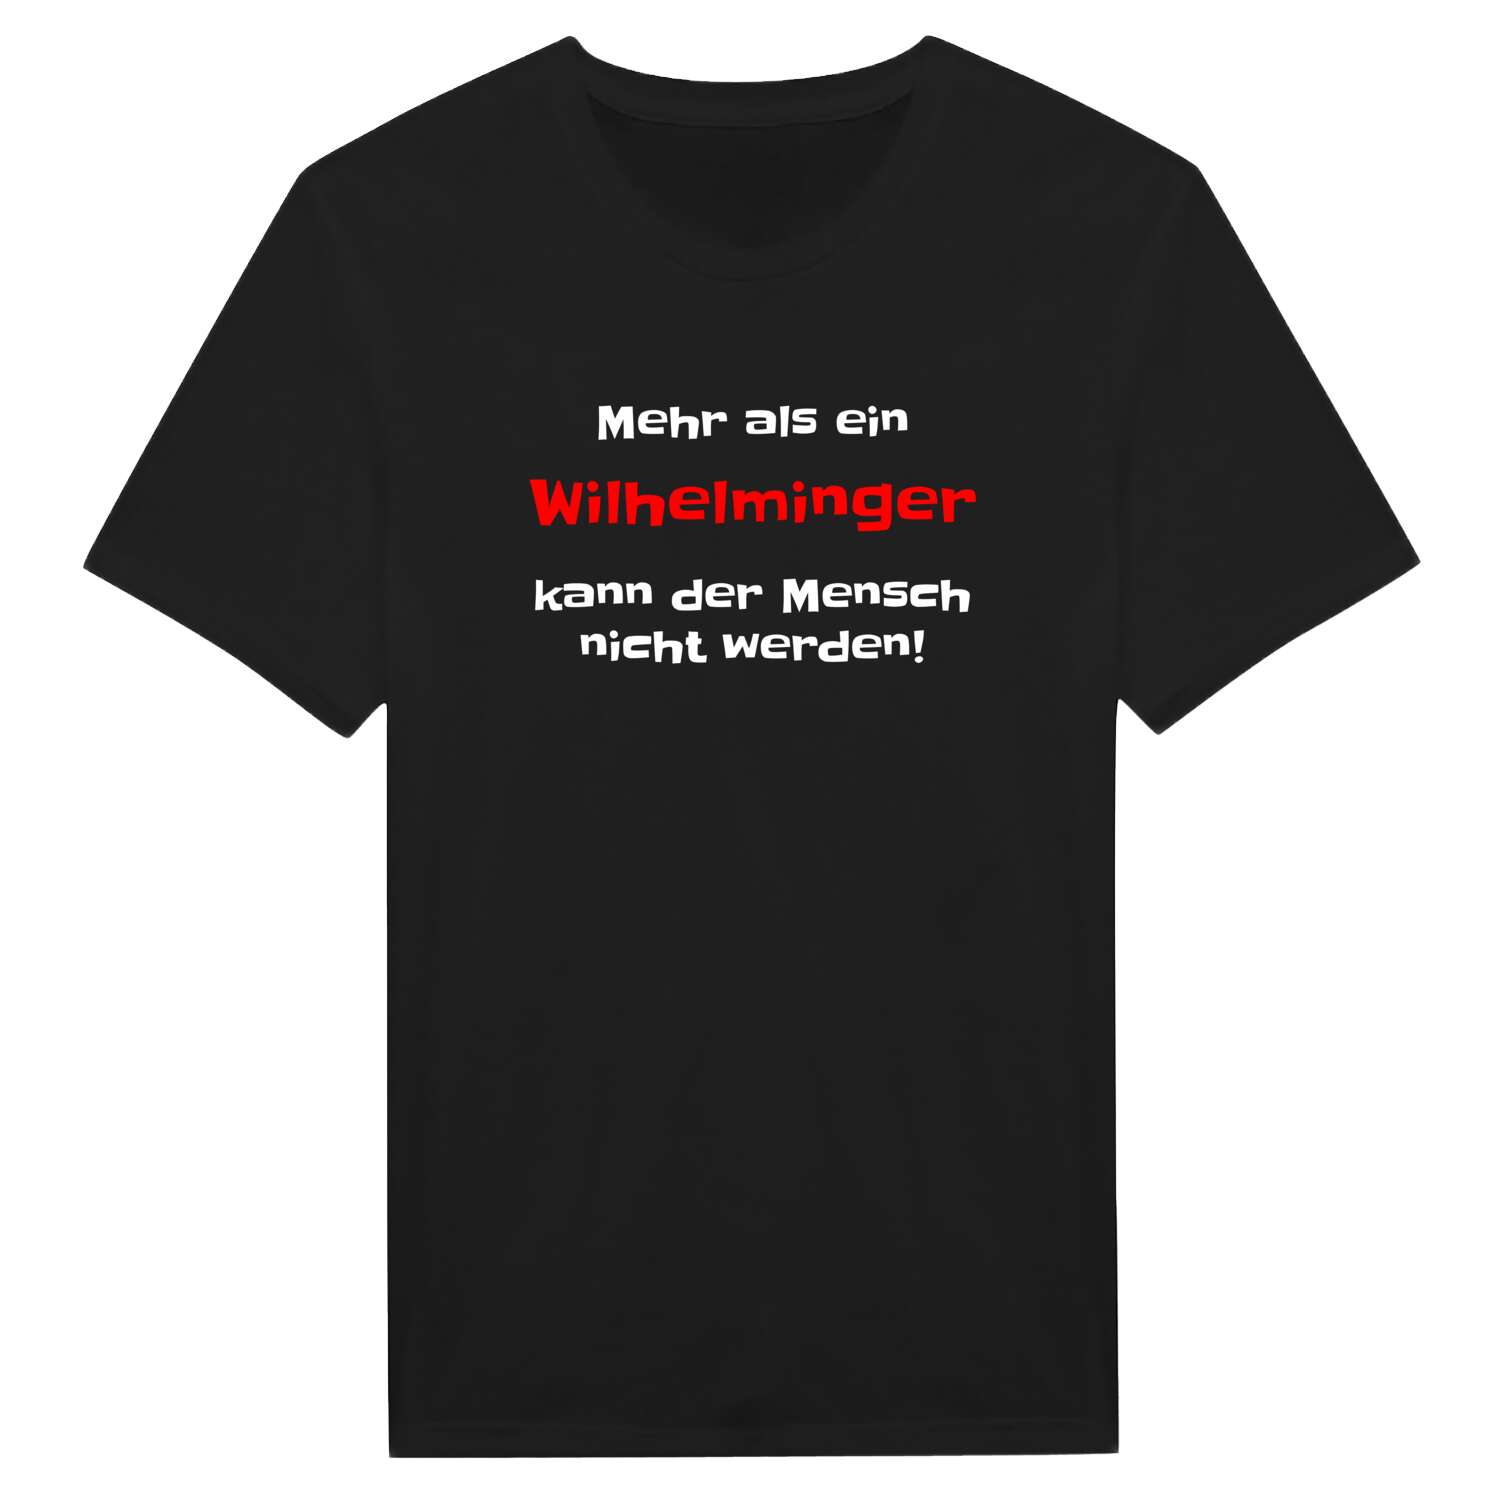 Wilhelming T-Shirt »Mehr als ein«